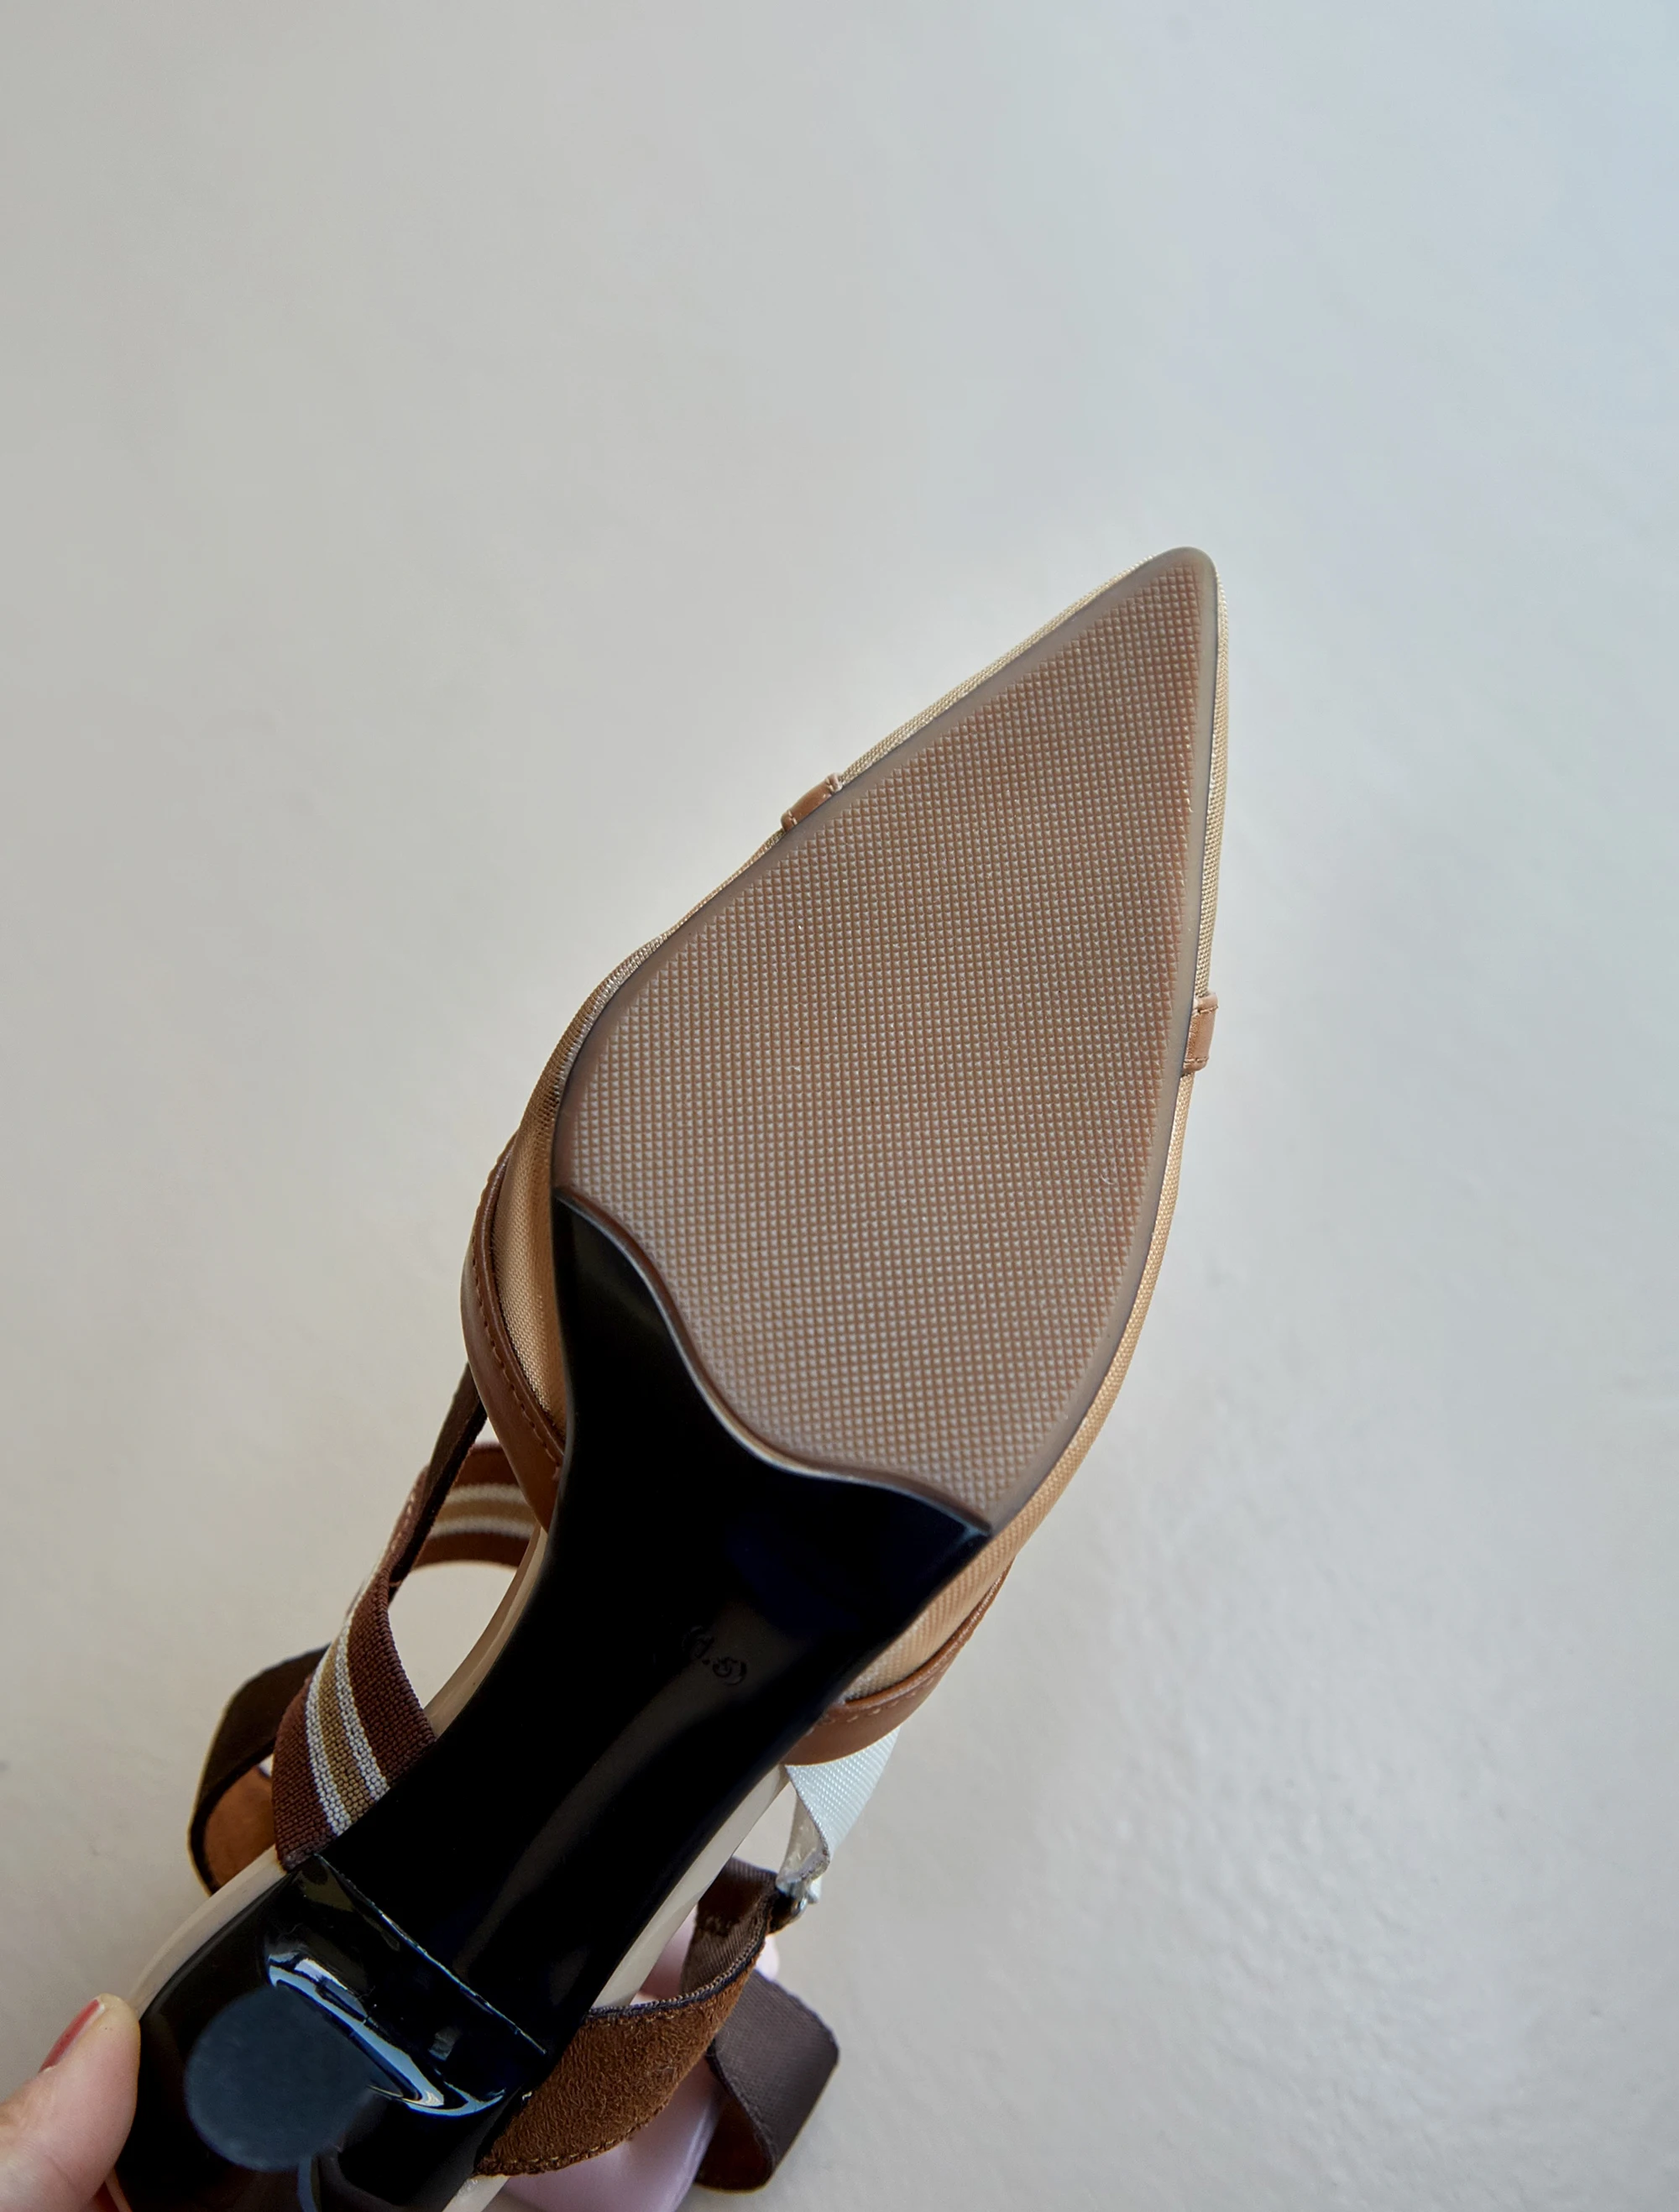 Kmeioo Nueva Moda de la Punta del Dedo del pie zapatos de Tacón Alto Sandalias de Mujer de las Señoras elegantes cómodo Parte de las Bombas de Vestir de cuero Genuino Zapatos de 6cm 1